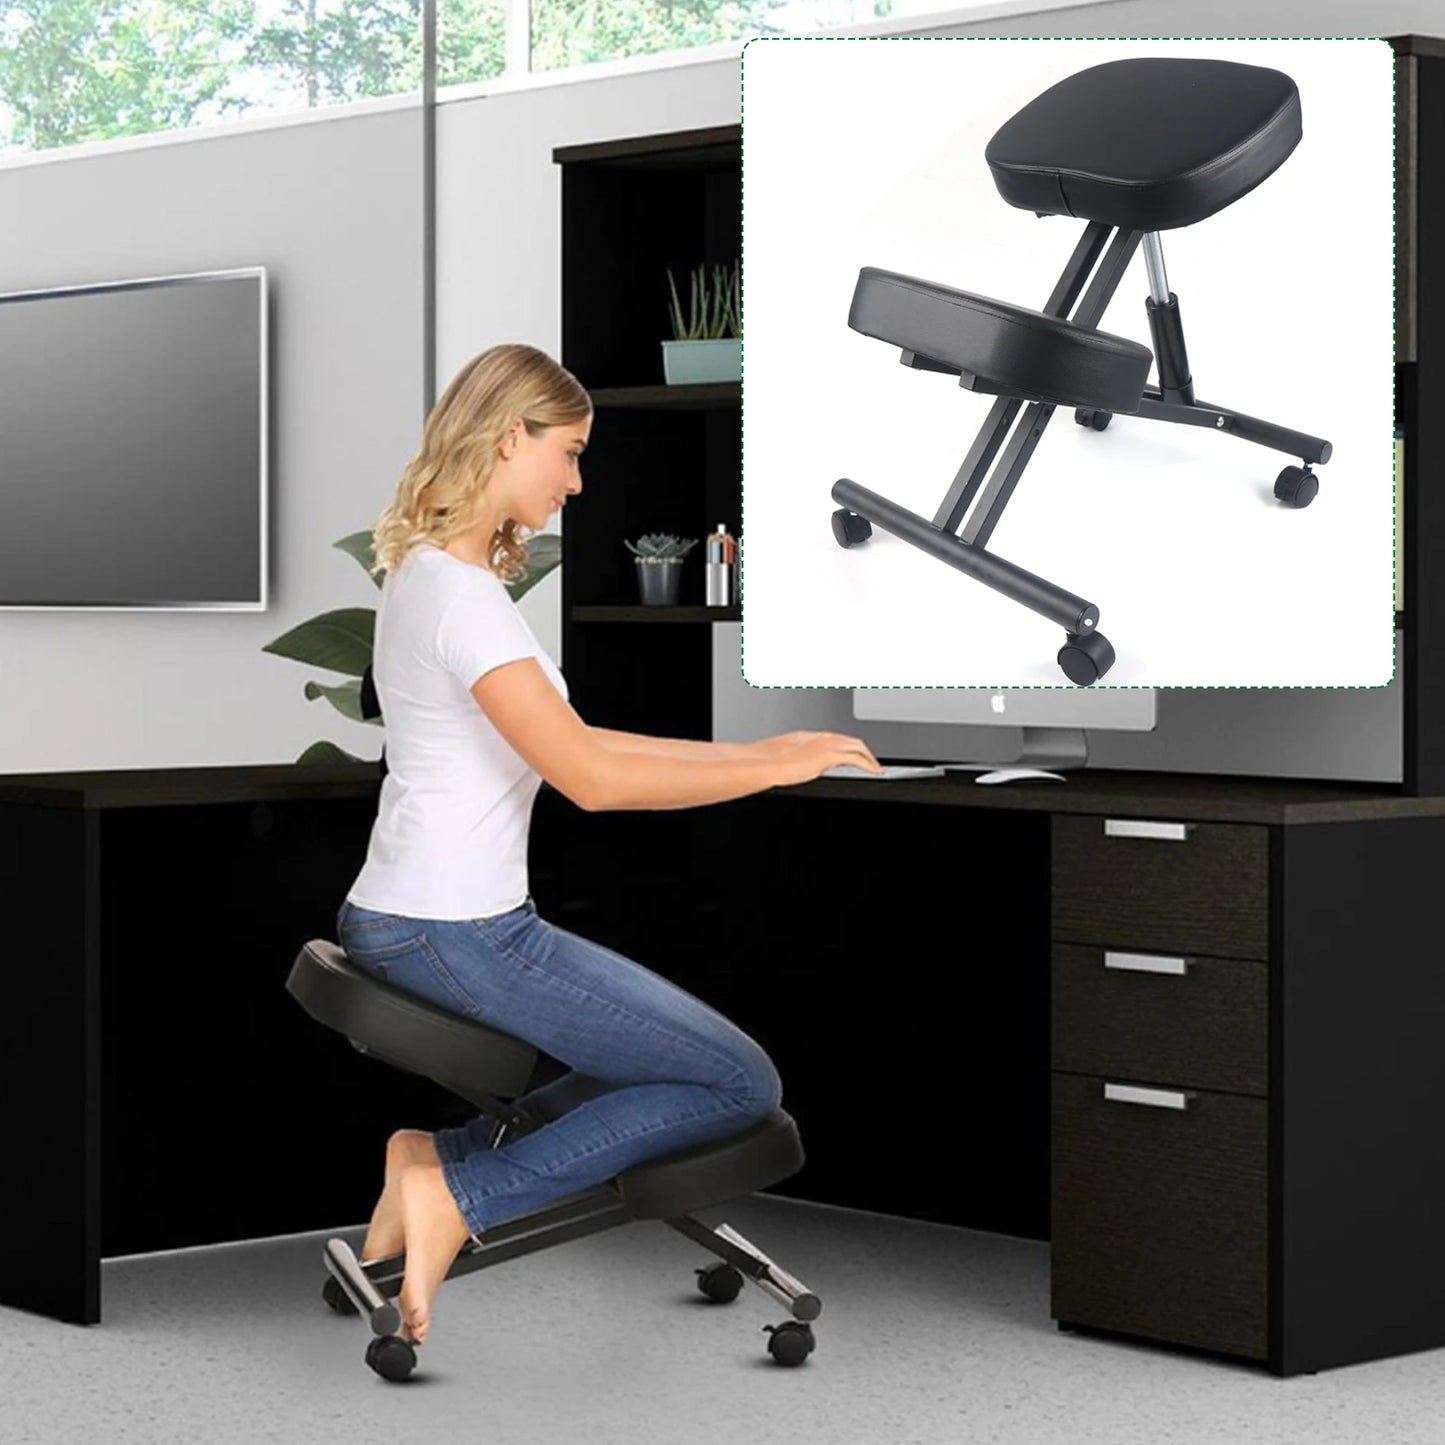 TABOURET À GENOUX ERGONOMIQUE ( ) - Sièges de bureau Digital noWmad - Matériel télétravail : Équipez-vous pour une expérience 2.0 ! Équipements et accessoires de bureau pour un télétravail confortable, efficace et flexible. Aménagez votre espace et gagnez en ergonomie. Casques, chaises, sous-mains, mouse jigglers... Exploitez tout le potentiel du travail à distance pour trouver votre équilibre, en voyage comme à la maison.